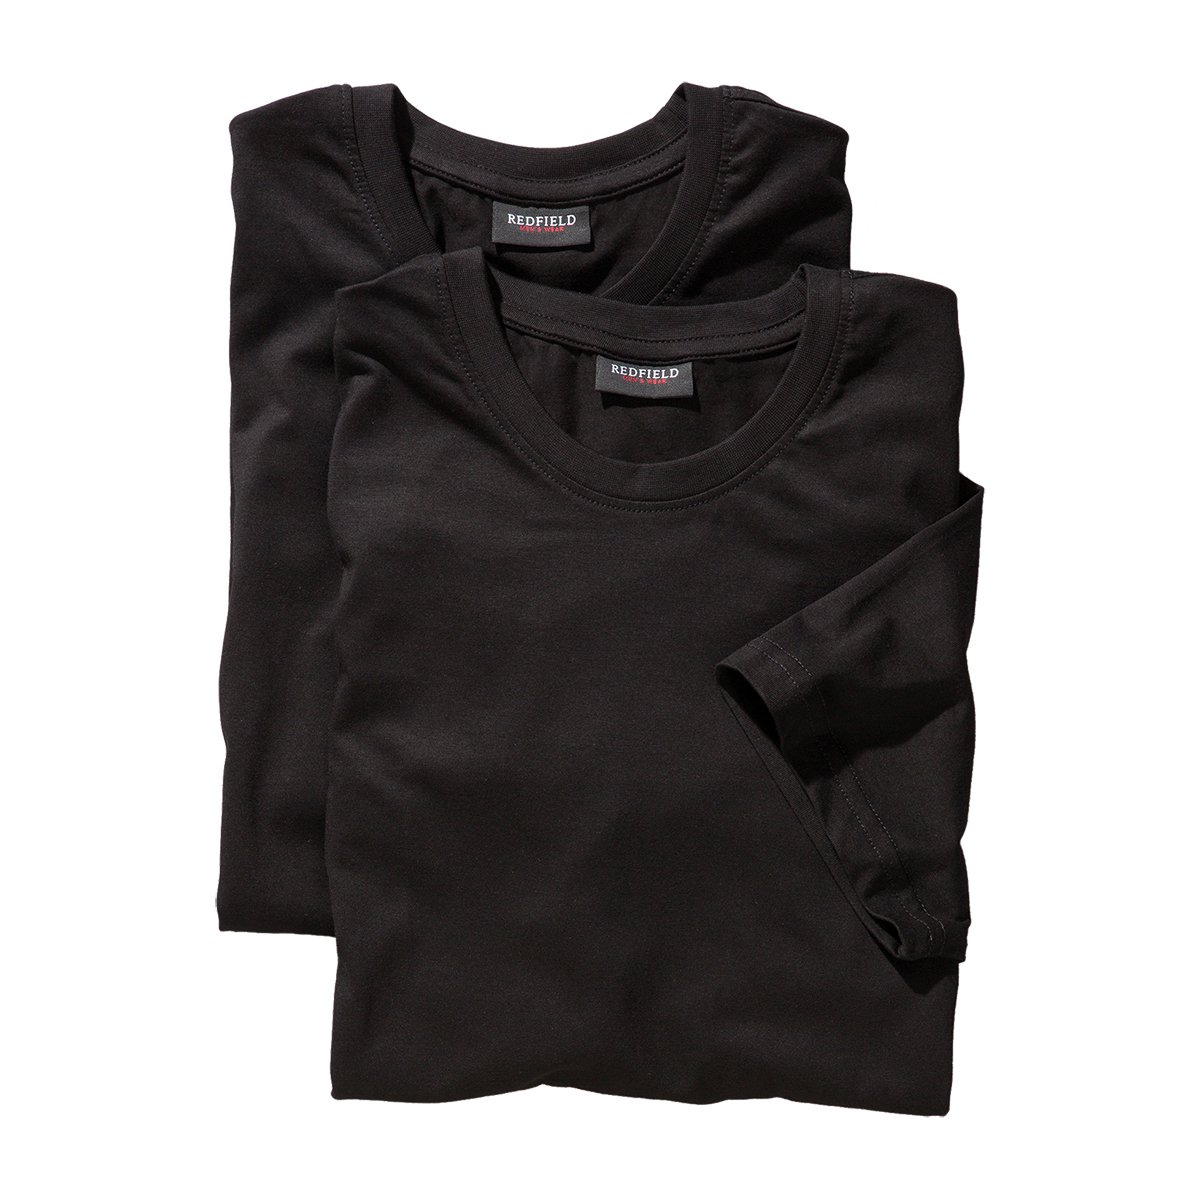 Redfield Doppelpack T-Shirt Herren Übergröße schwarz, XL Größe:6XL